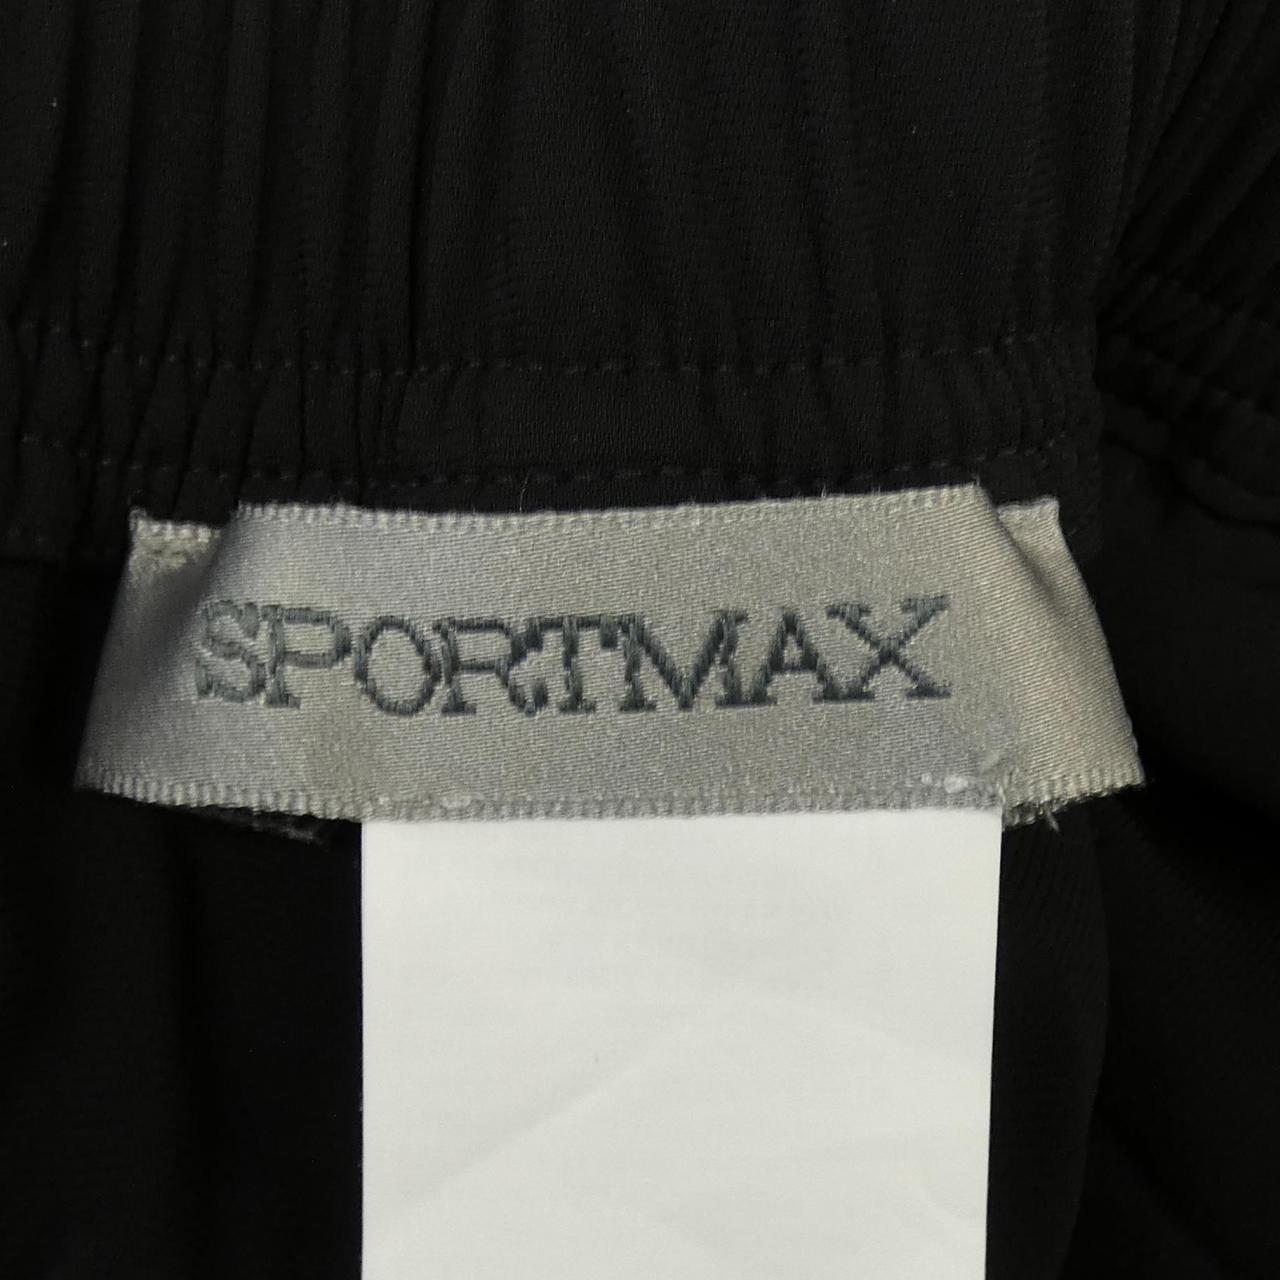 スポーツマックス SPORT MAX パンツ付属情報について